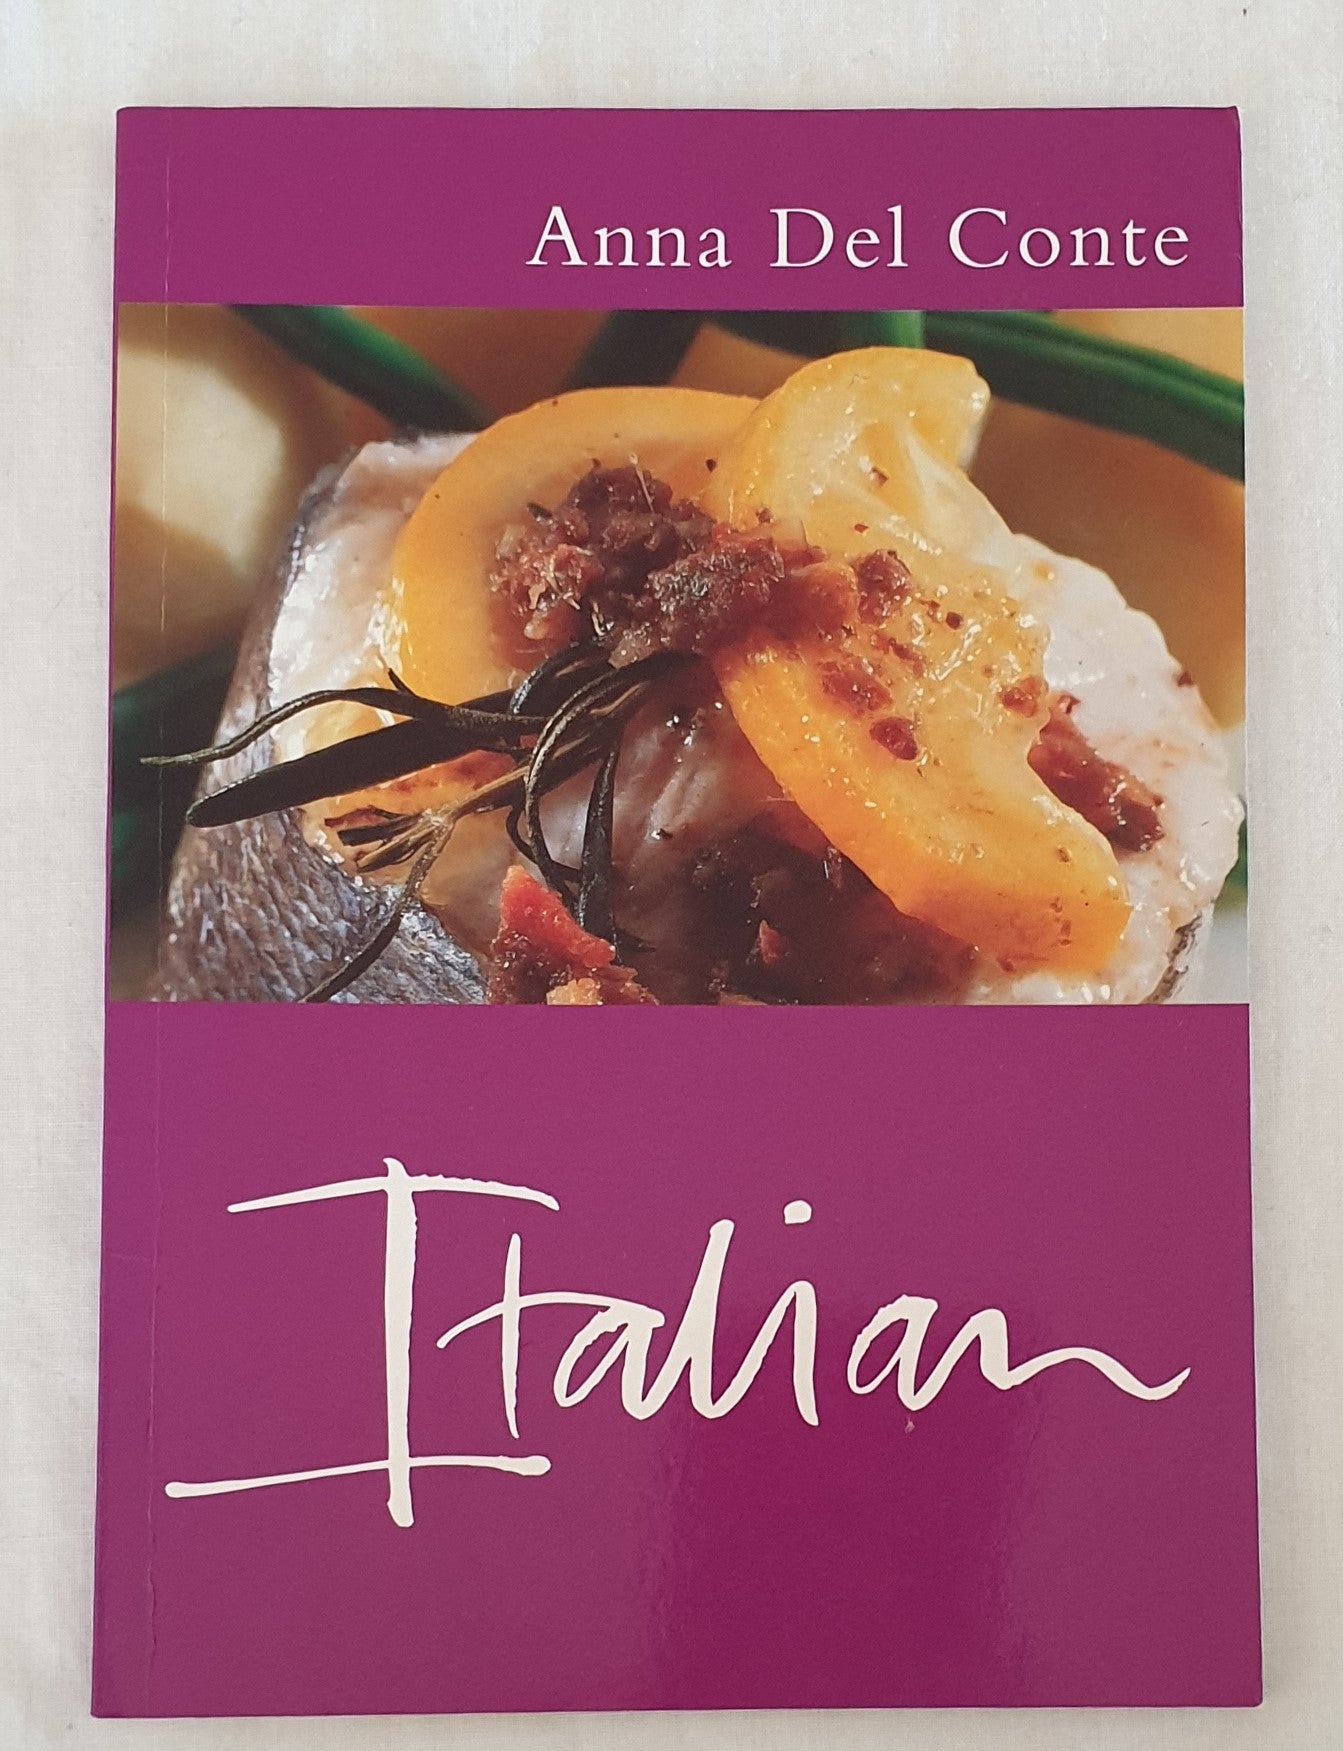 Italian by Anna Del Conte